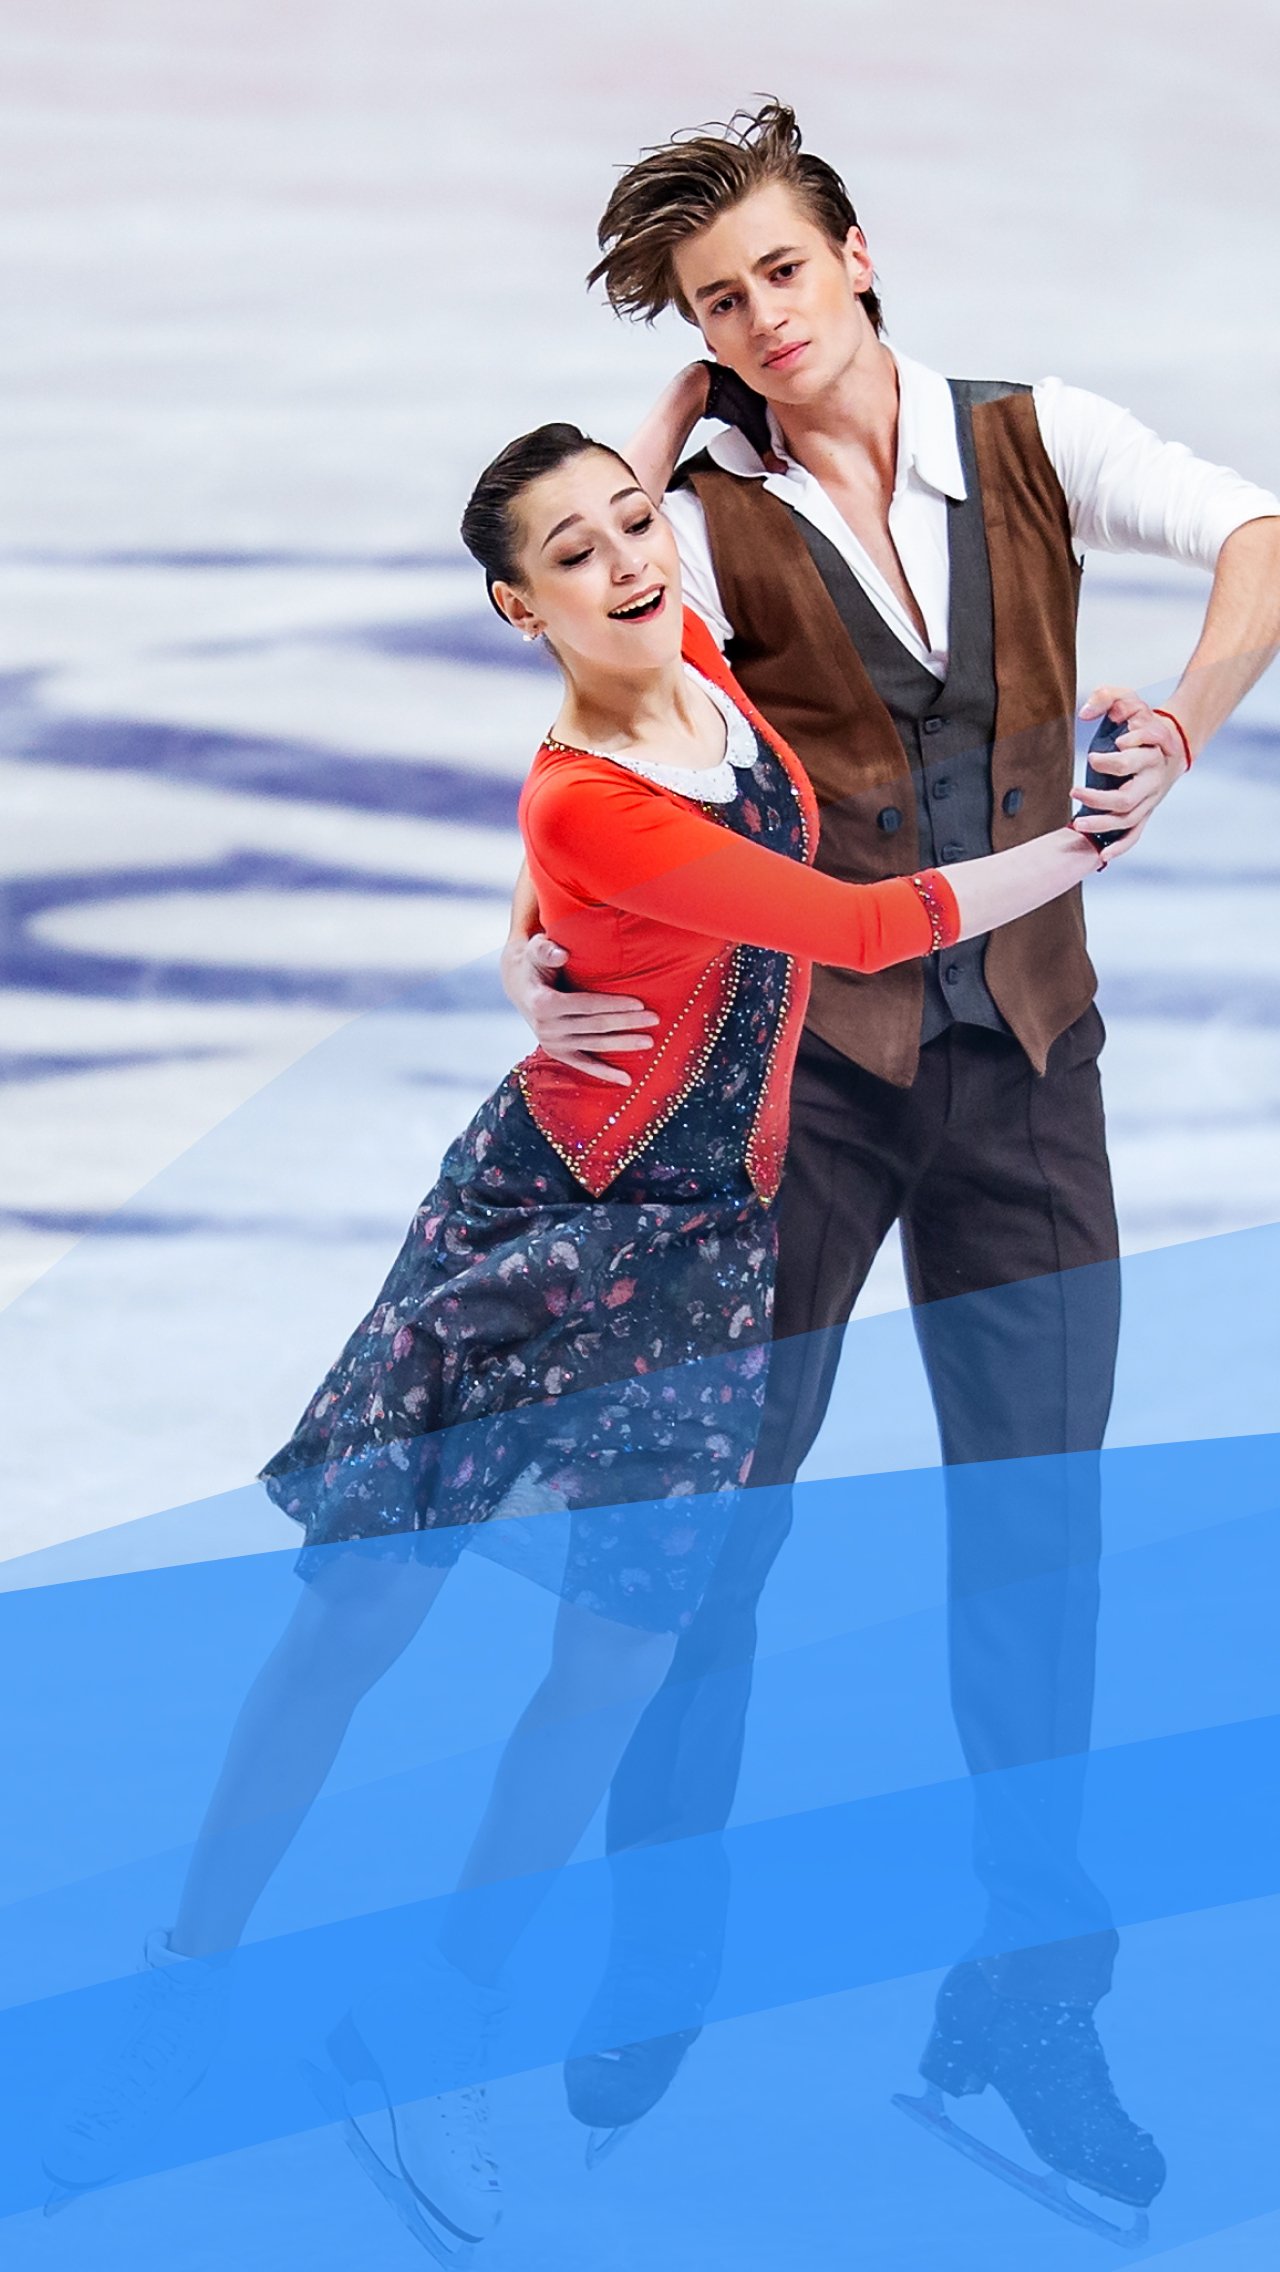 Вид спорта: фигурное катание (танцы на льду)